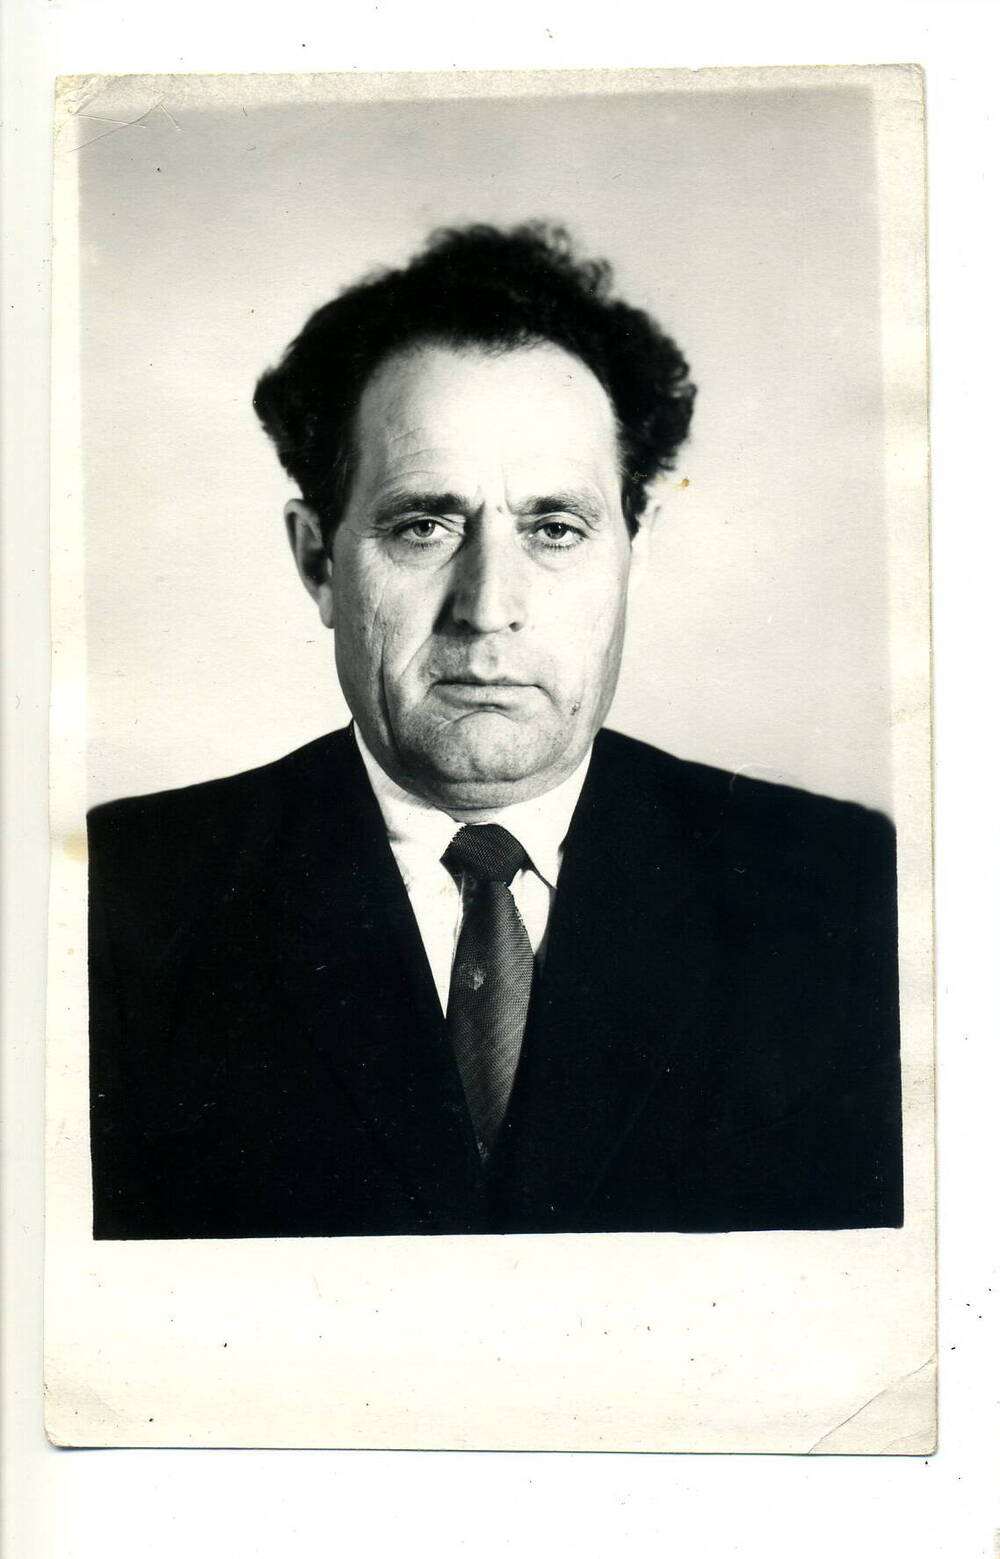 Фото. Скорняков Н.М. председателя РИК, 1973-77гг.